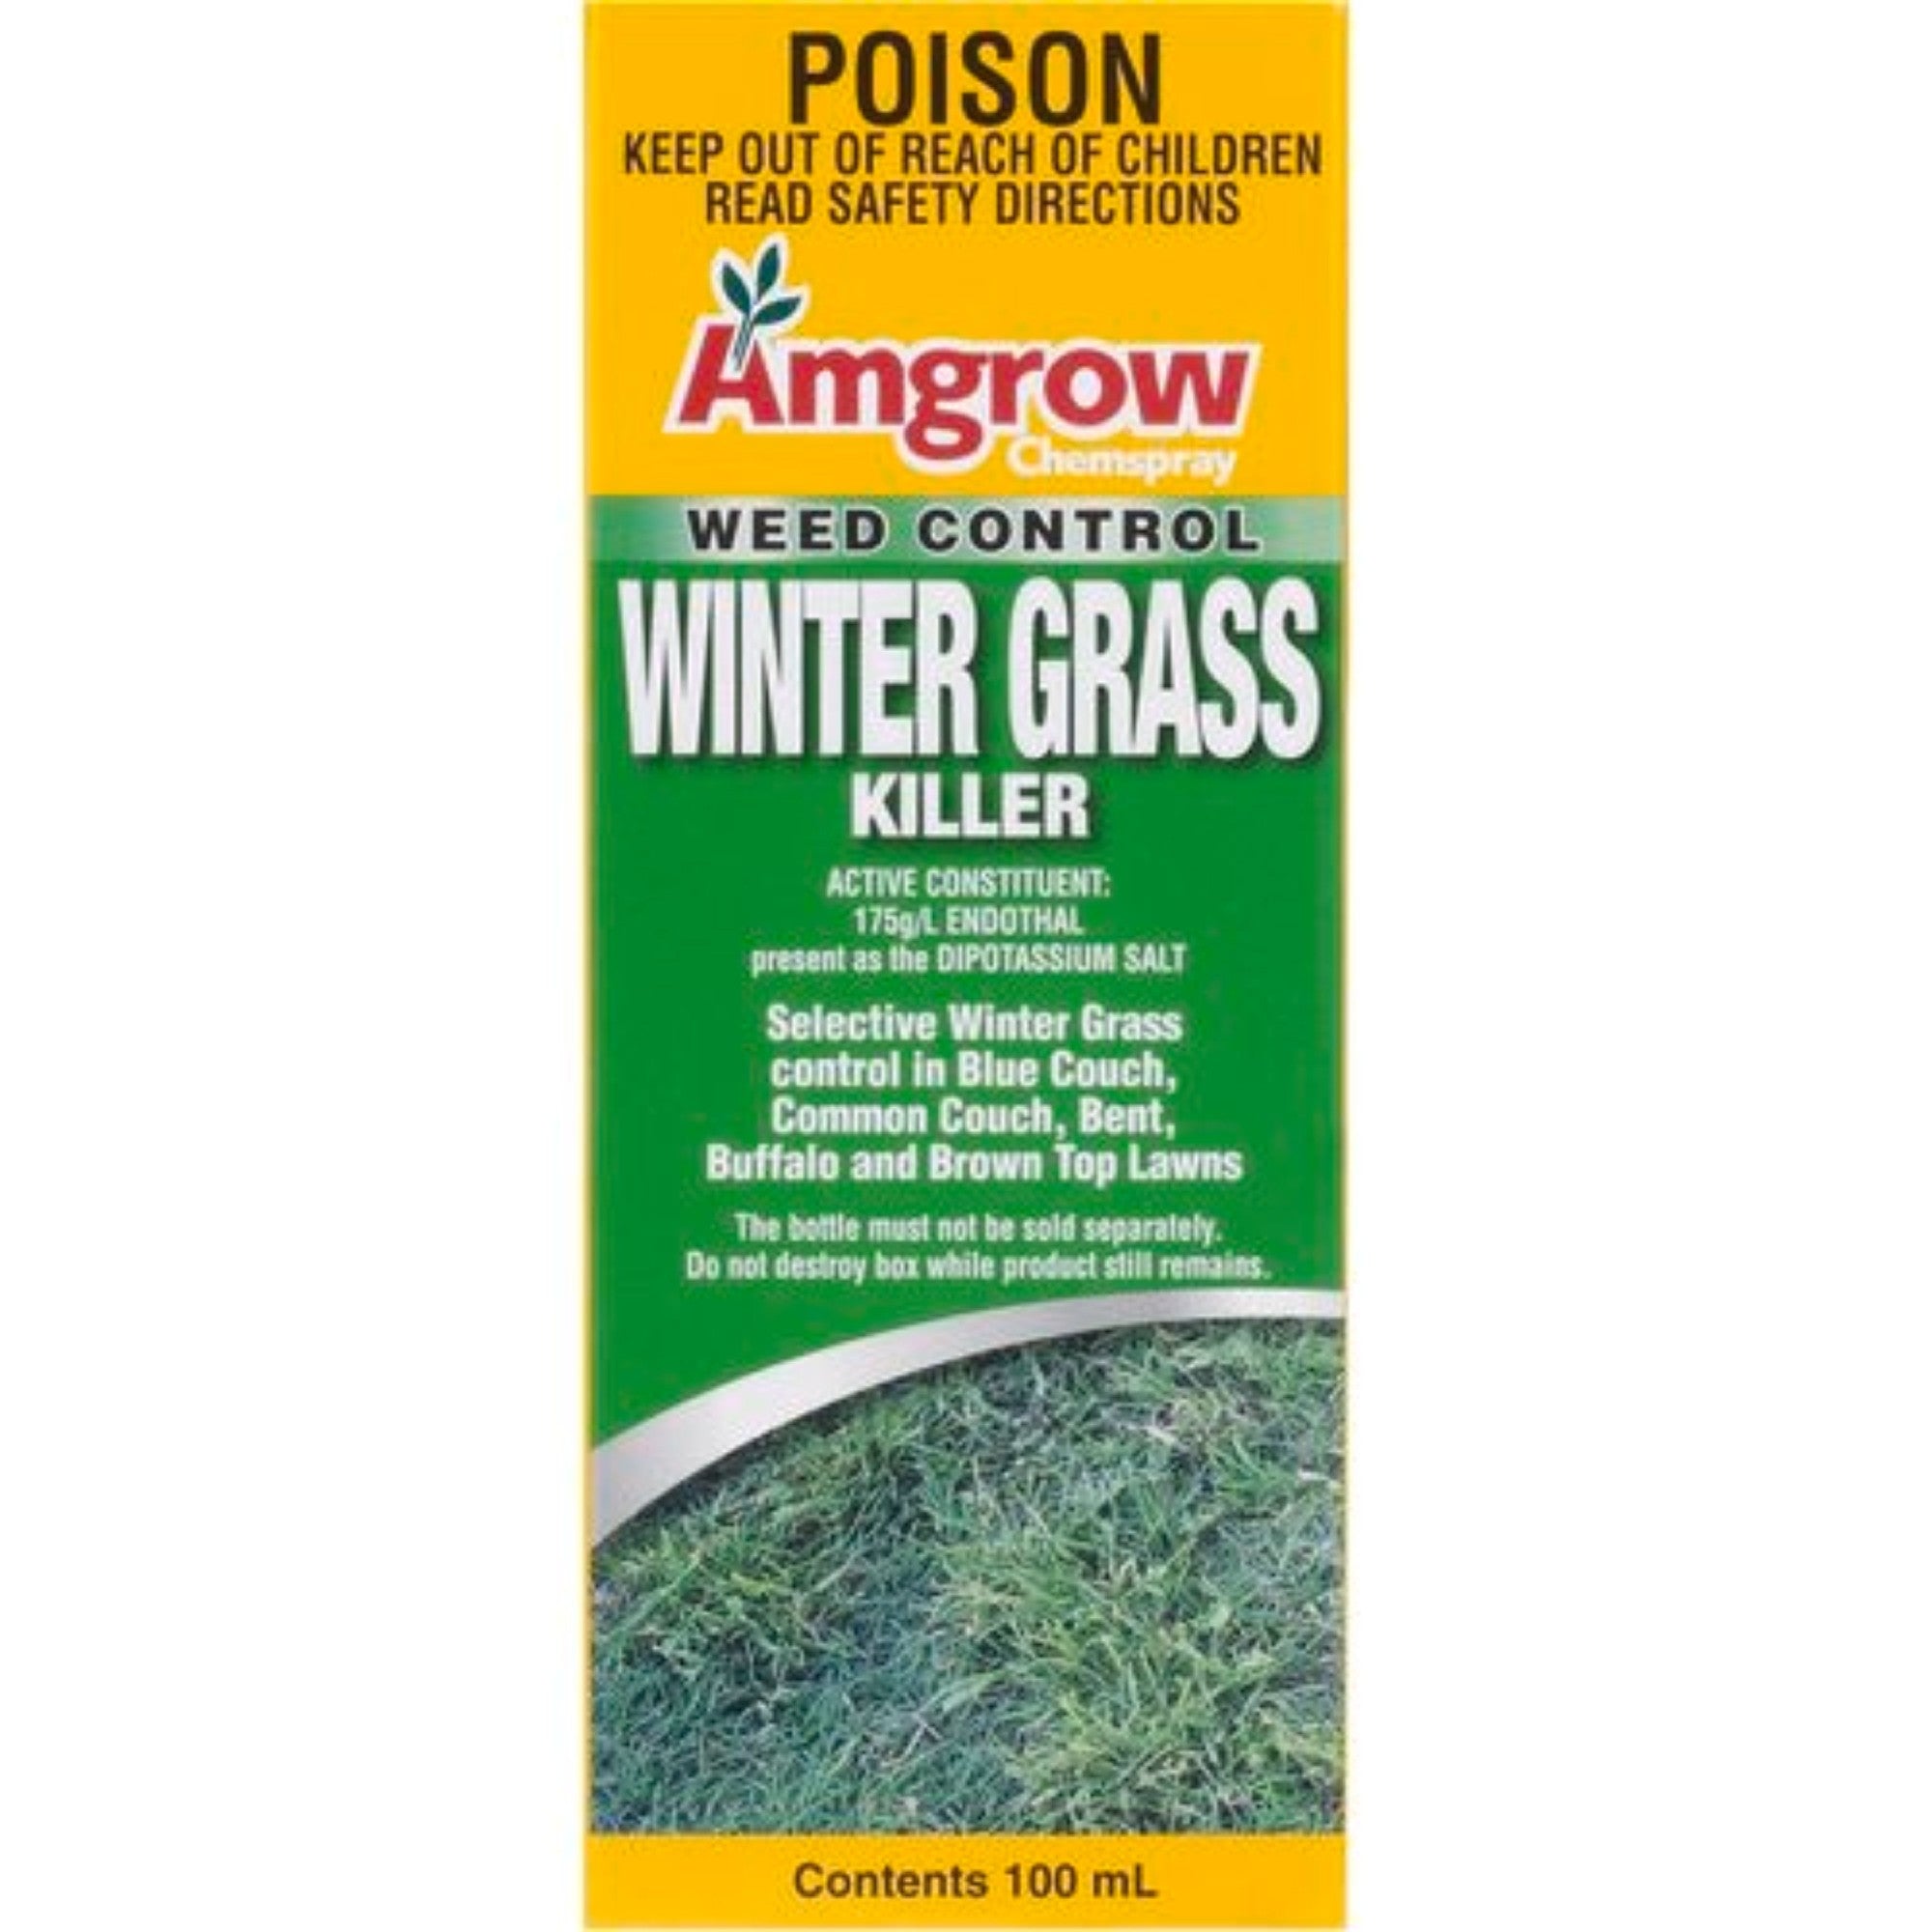 Winter Grass Killer Amgrow 100ml